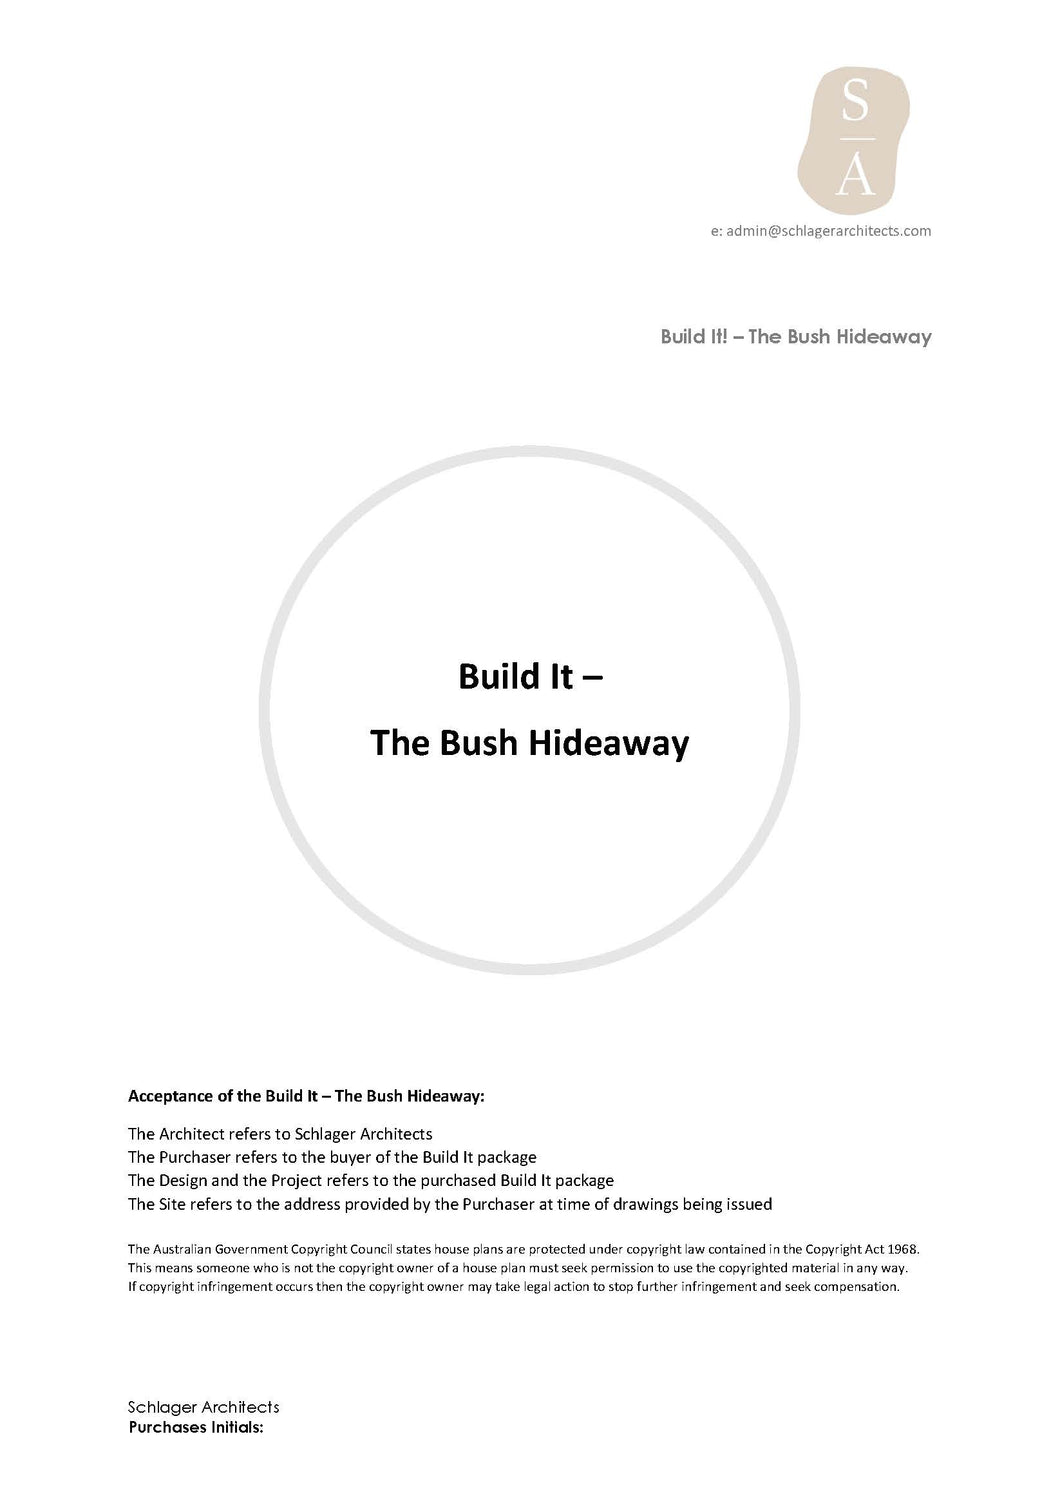 Shop Our House Plans - Build It - The Bush Hideaway